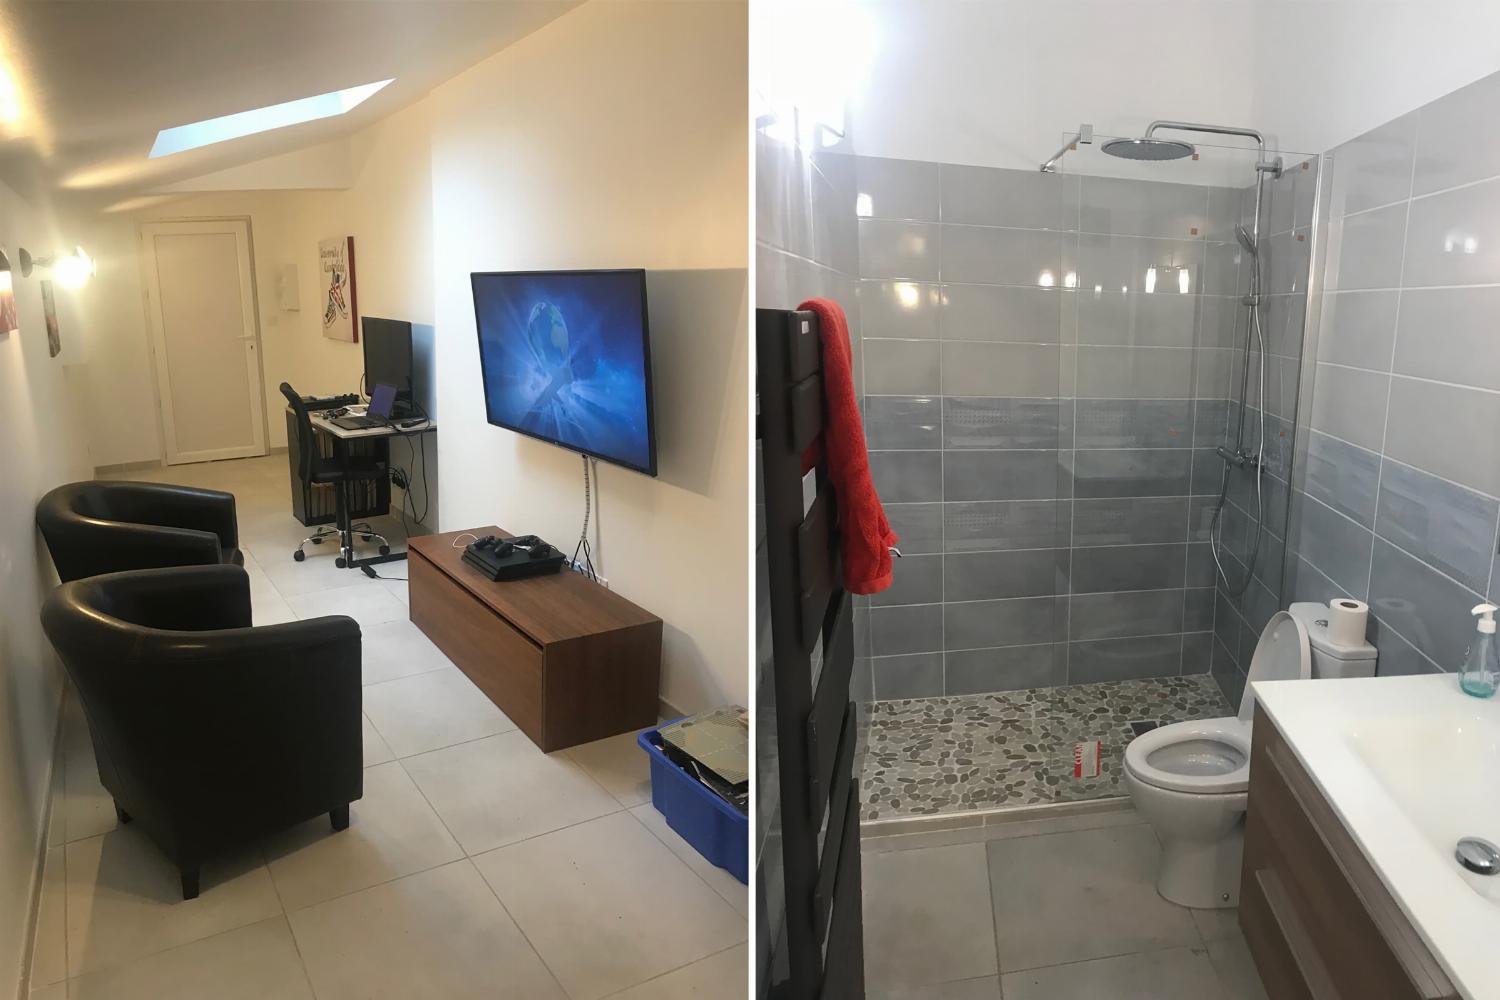 Salle de bain et cinema | Location maison dans le sud de la France